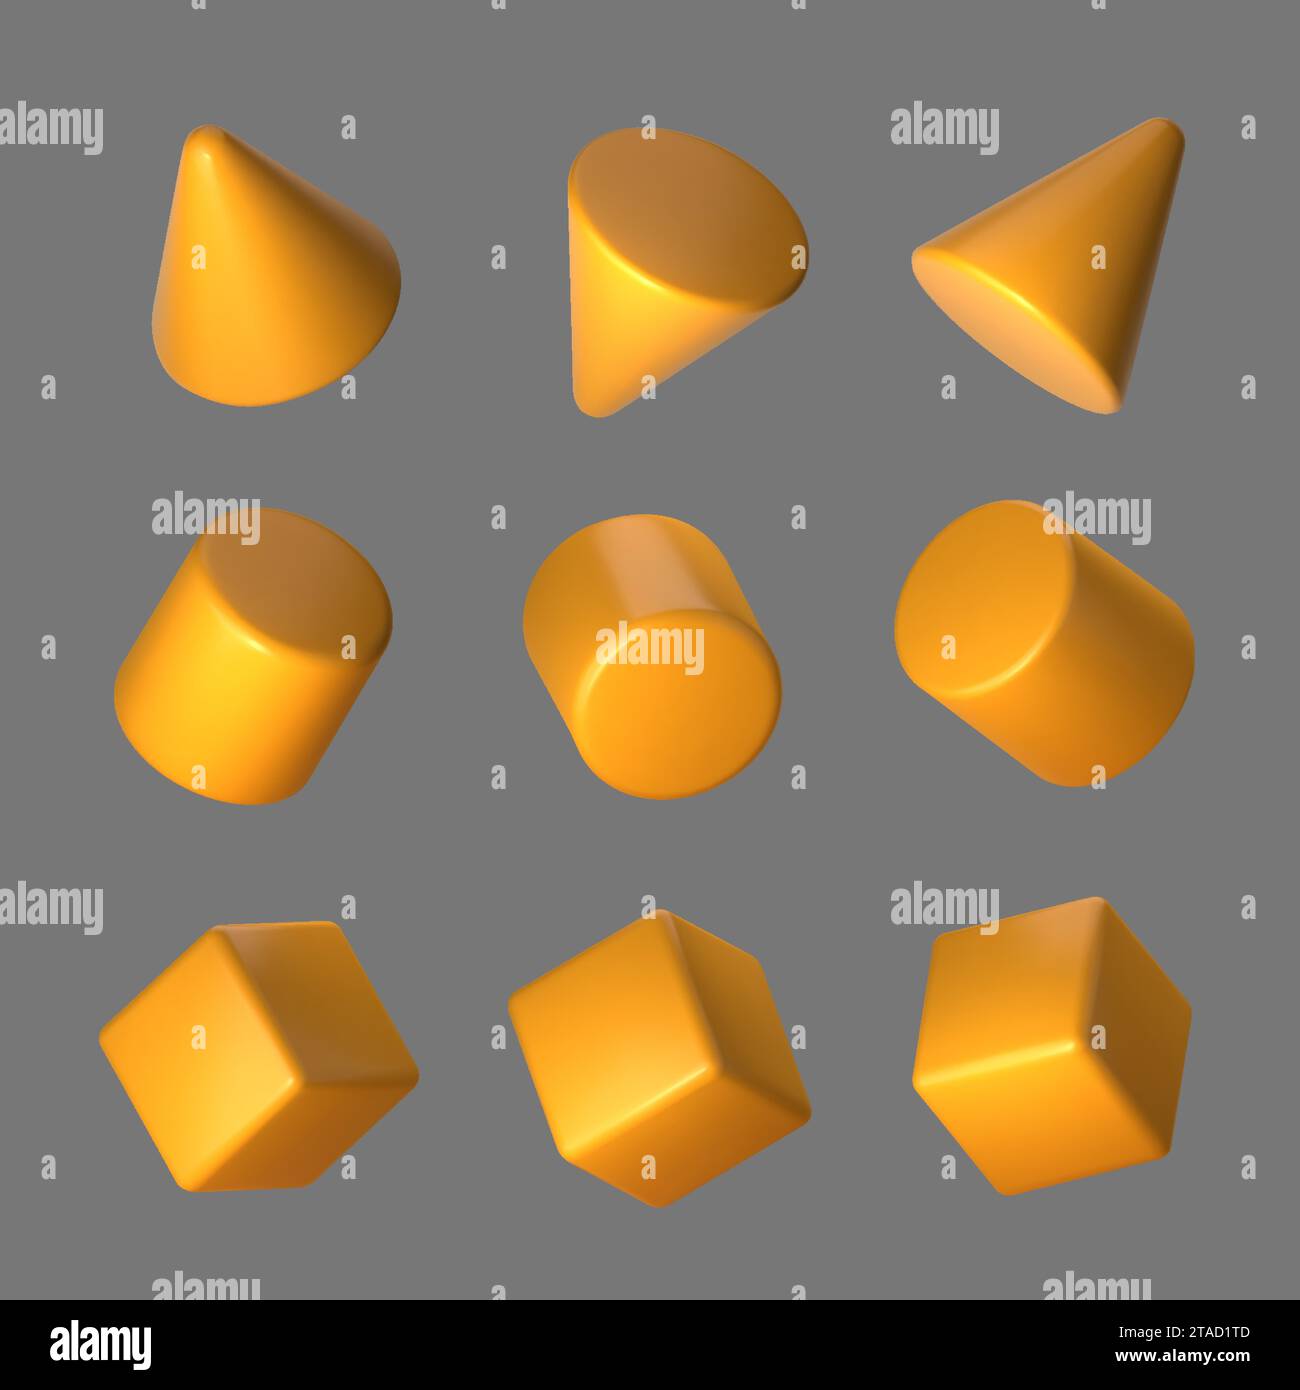 3d del set di forme geometriche gialle. Cubo geometrico arancione realistico, cono e cilindro in prospettiva isolati su sfondo grigio. Illustrazione vettoriale. Illustrazione Vettoriale